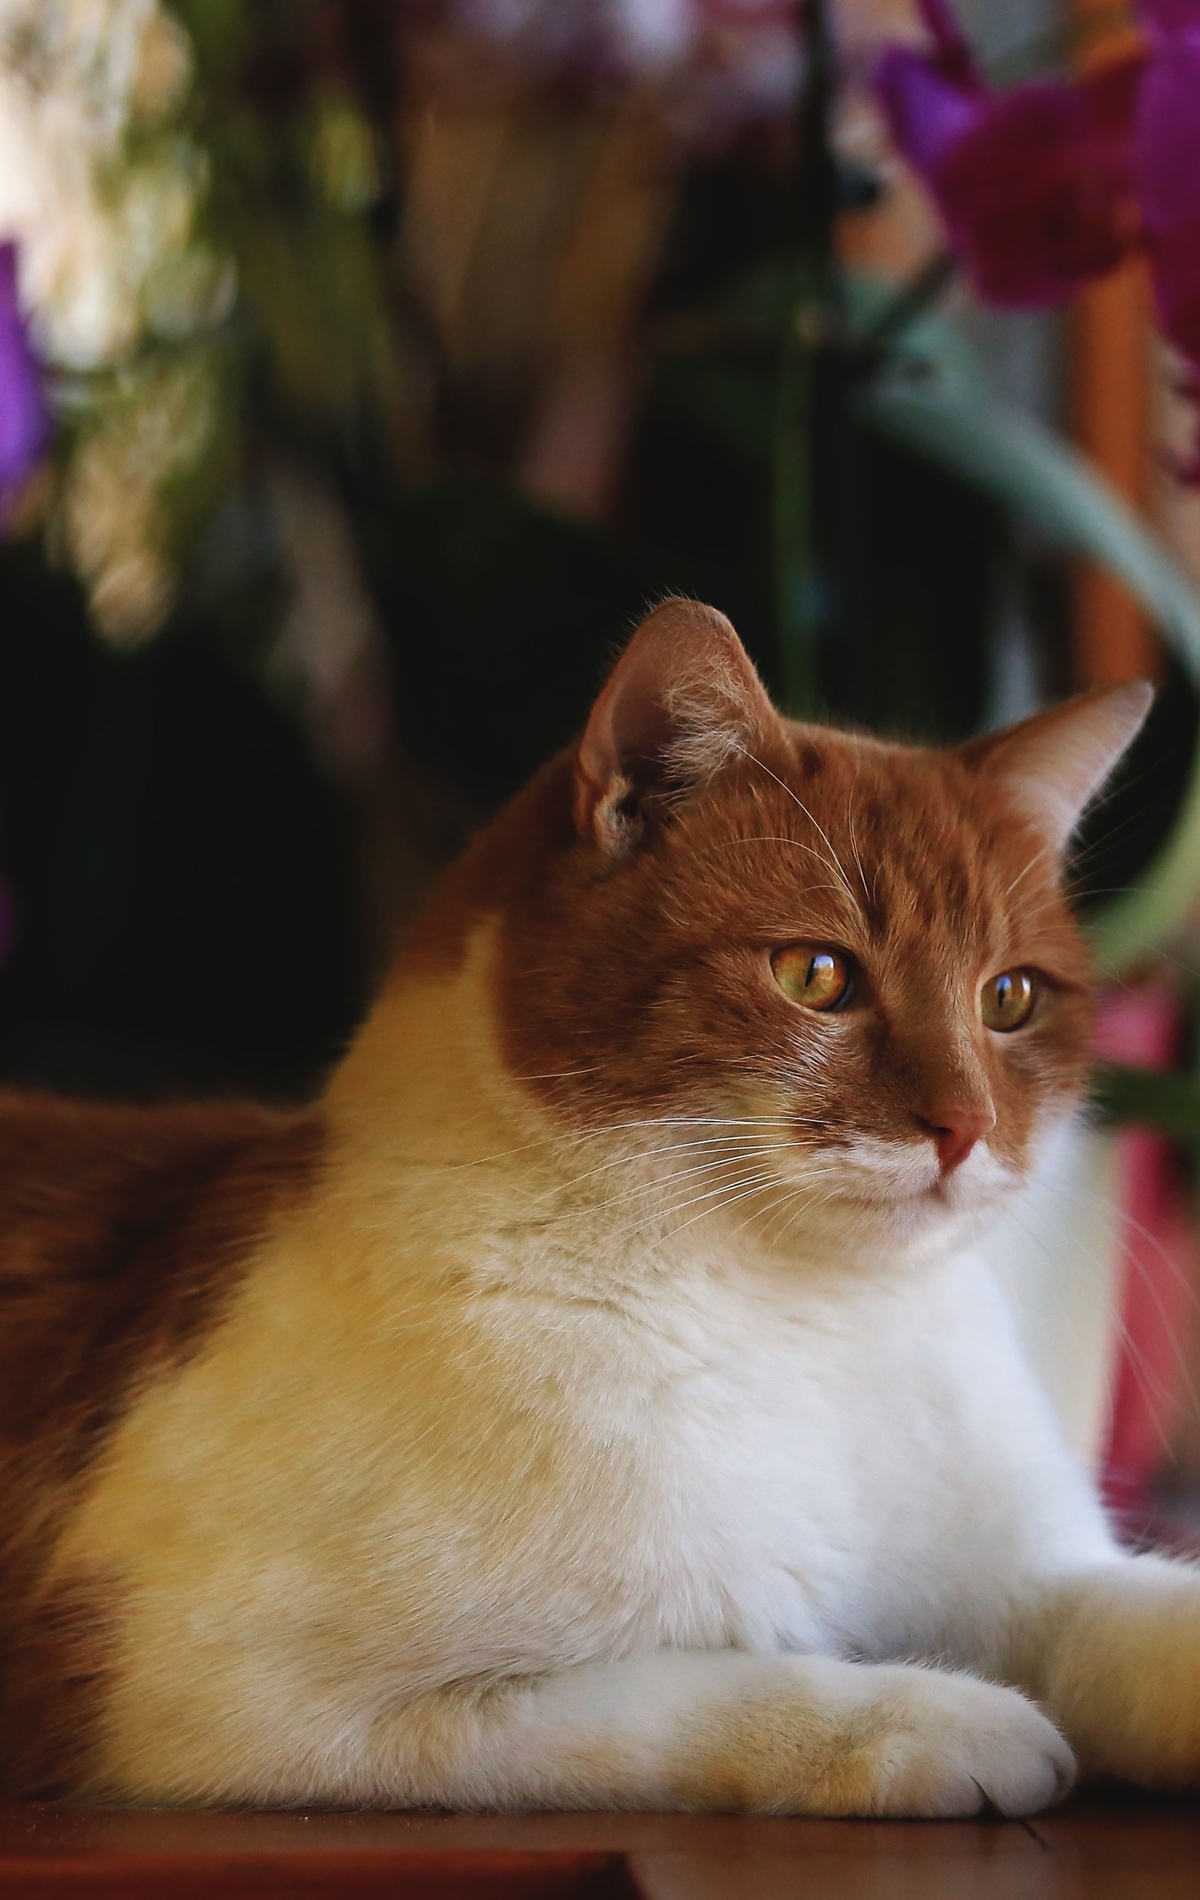 Картинка: Кот, котяра, рыжий, морда, взгляд, глаза, лапы, шерсть, смотрит, окно